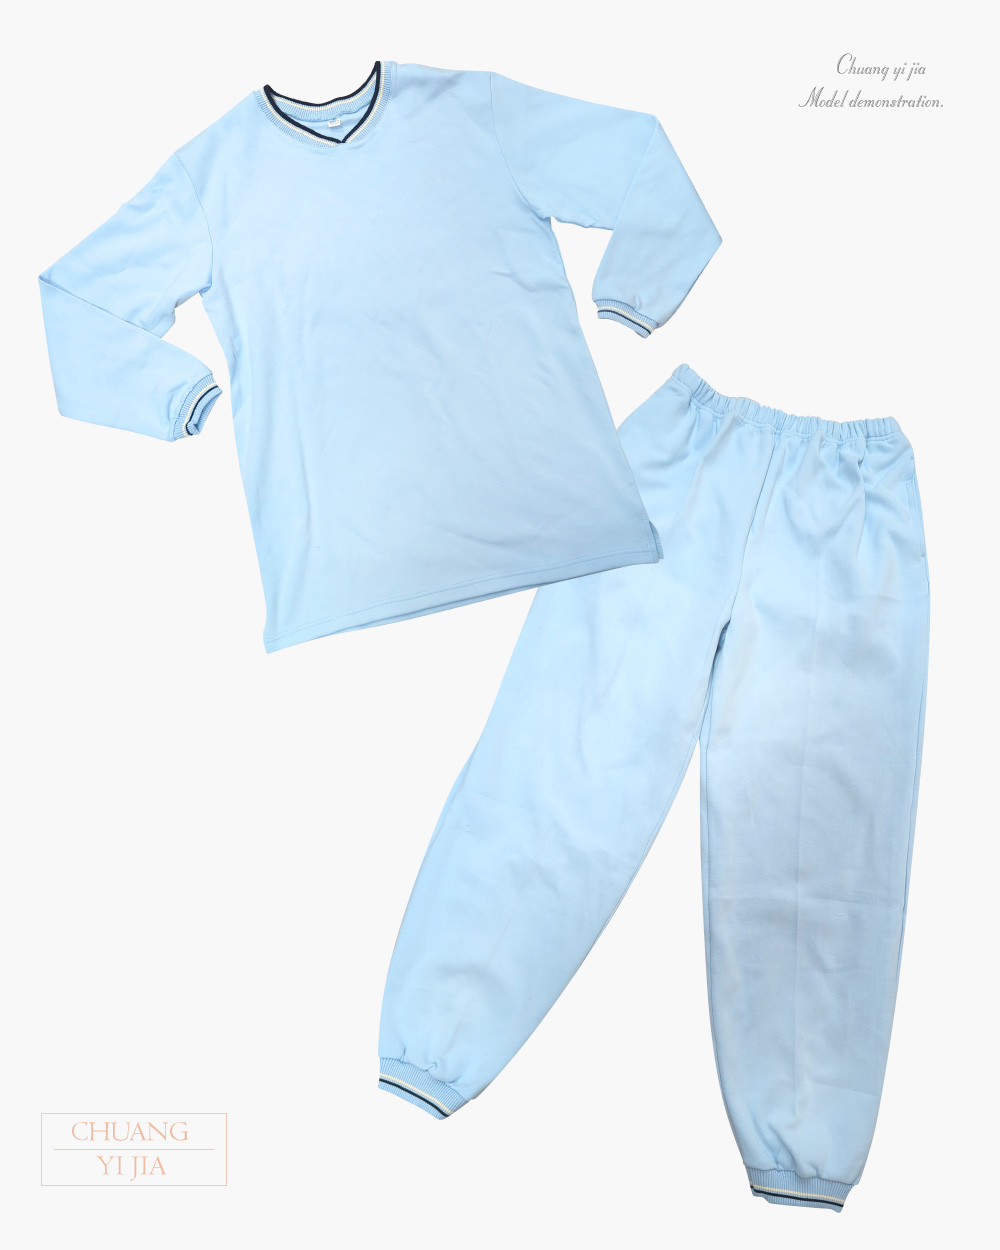 創e家團體服-健檢服長褲-水藍色 平拍正面套裝